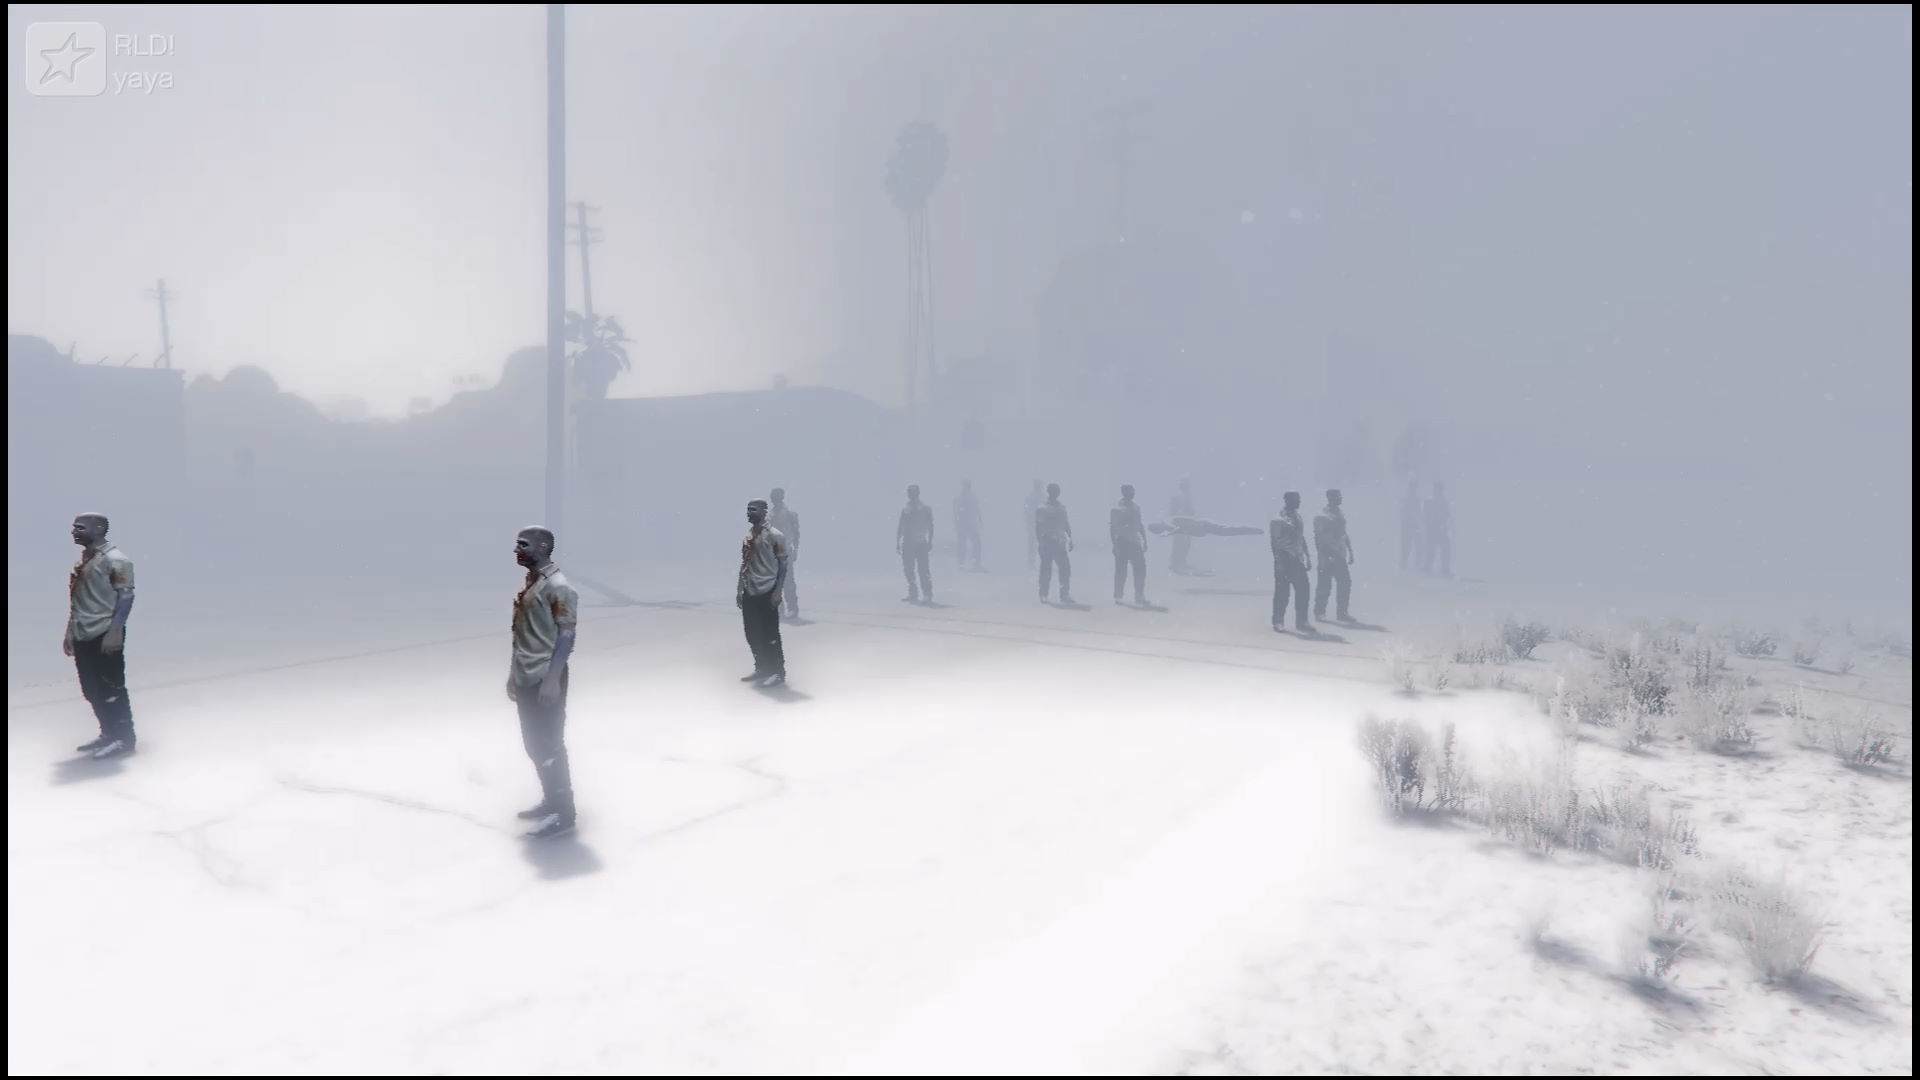 Silent Hill Snow - HD Wallpaper 